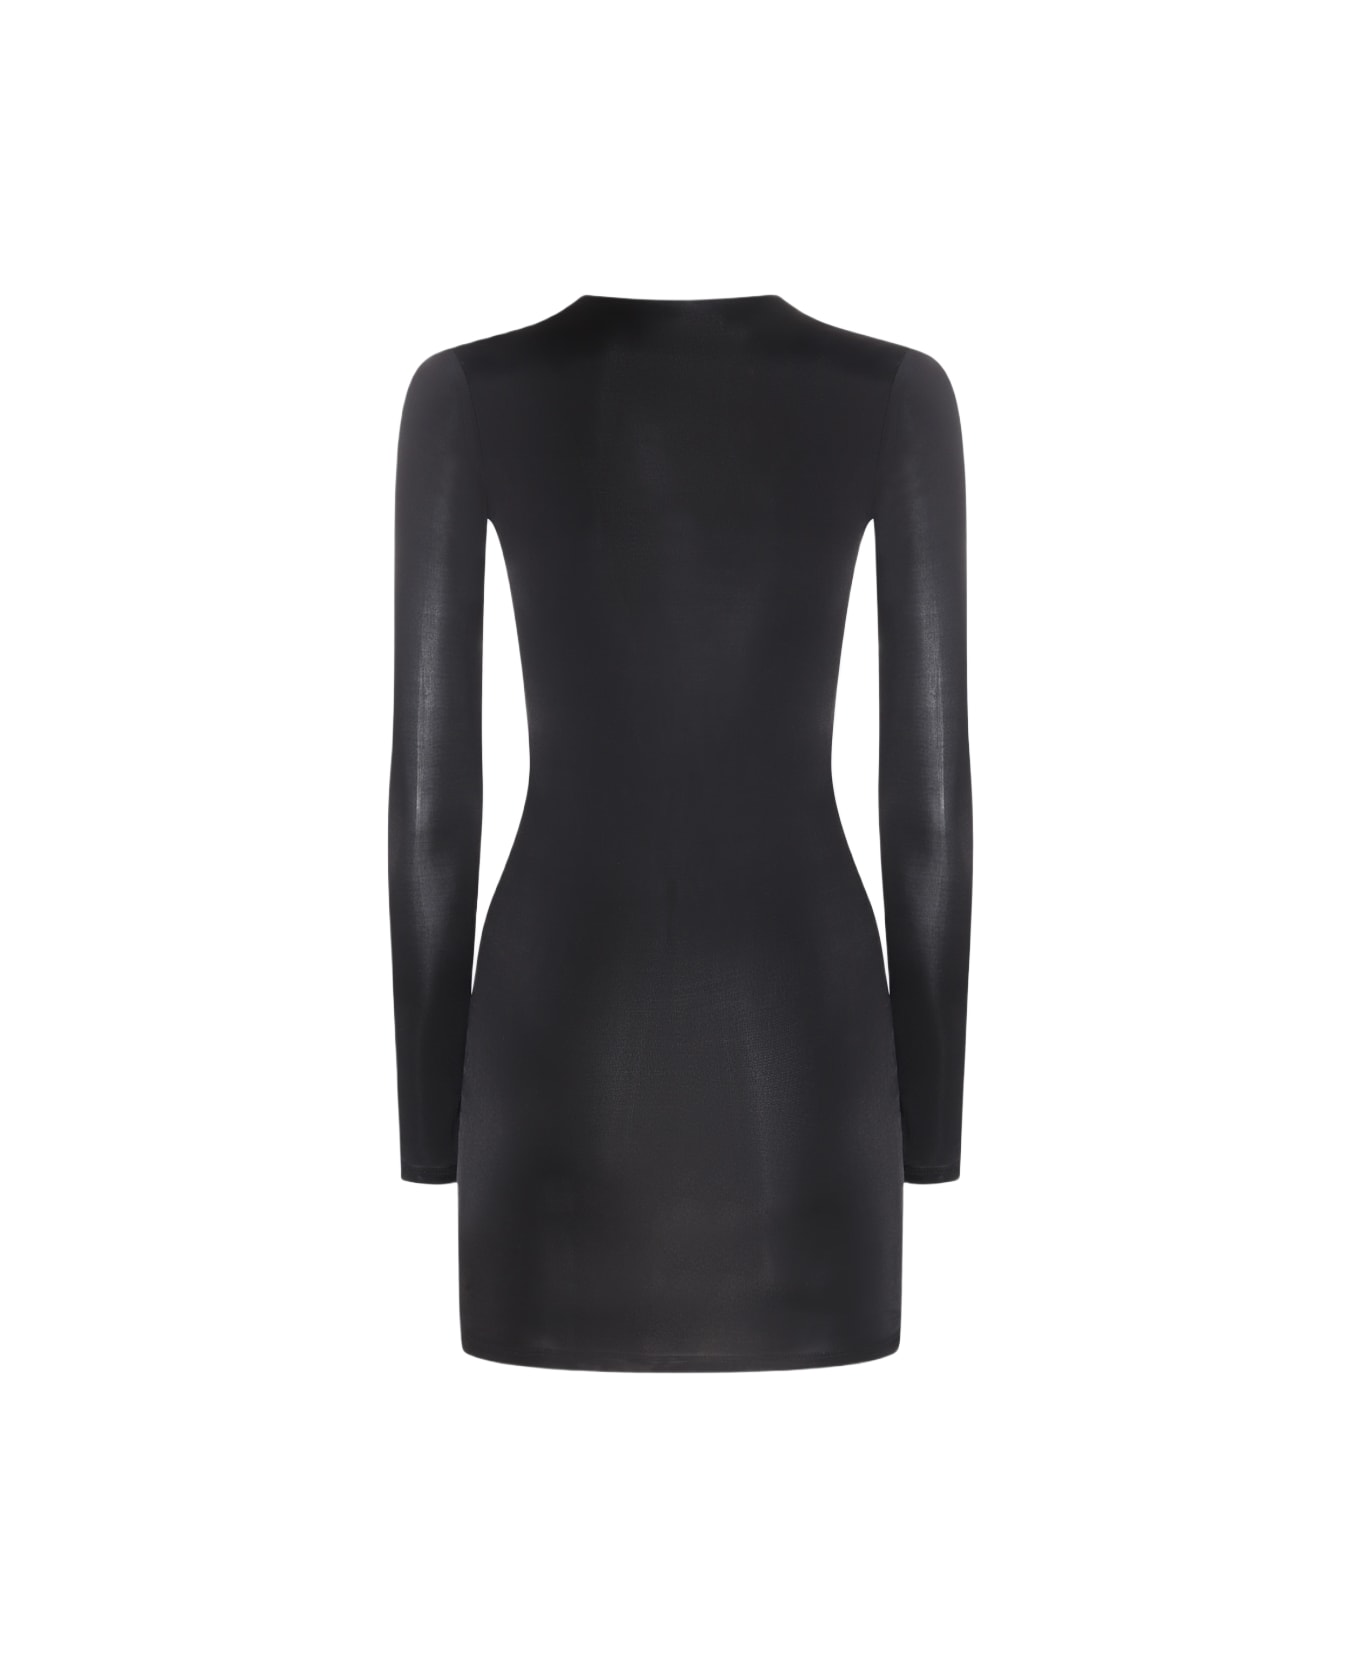 Louisa Ballou Black Mini Dress - Black